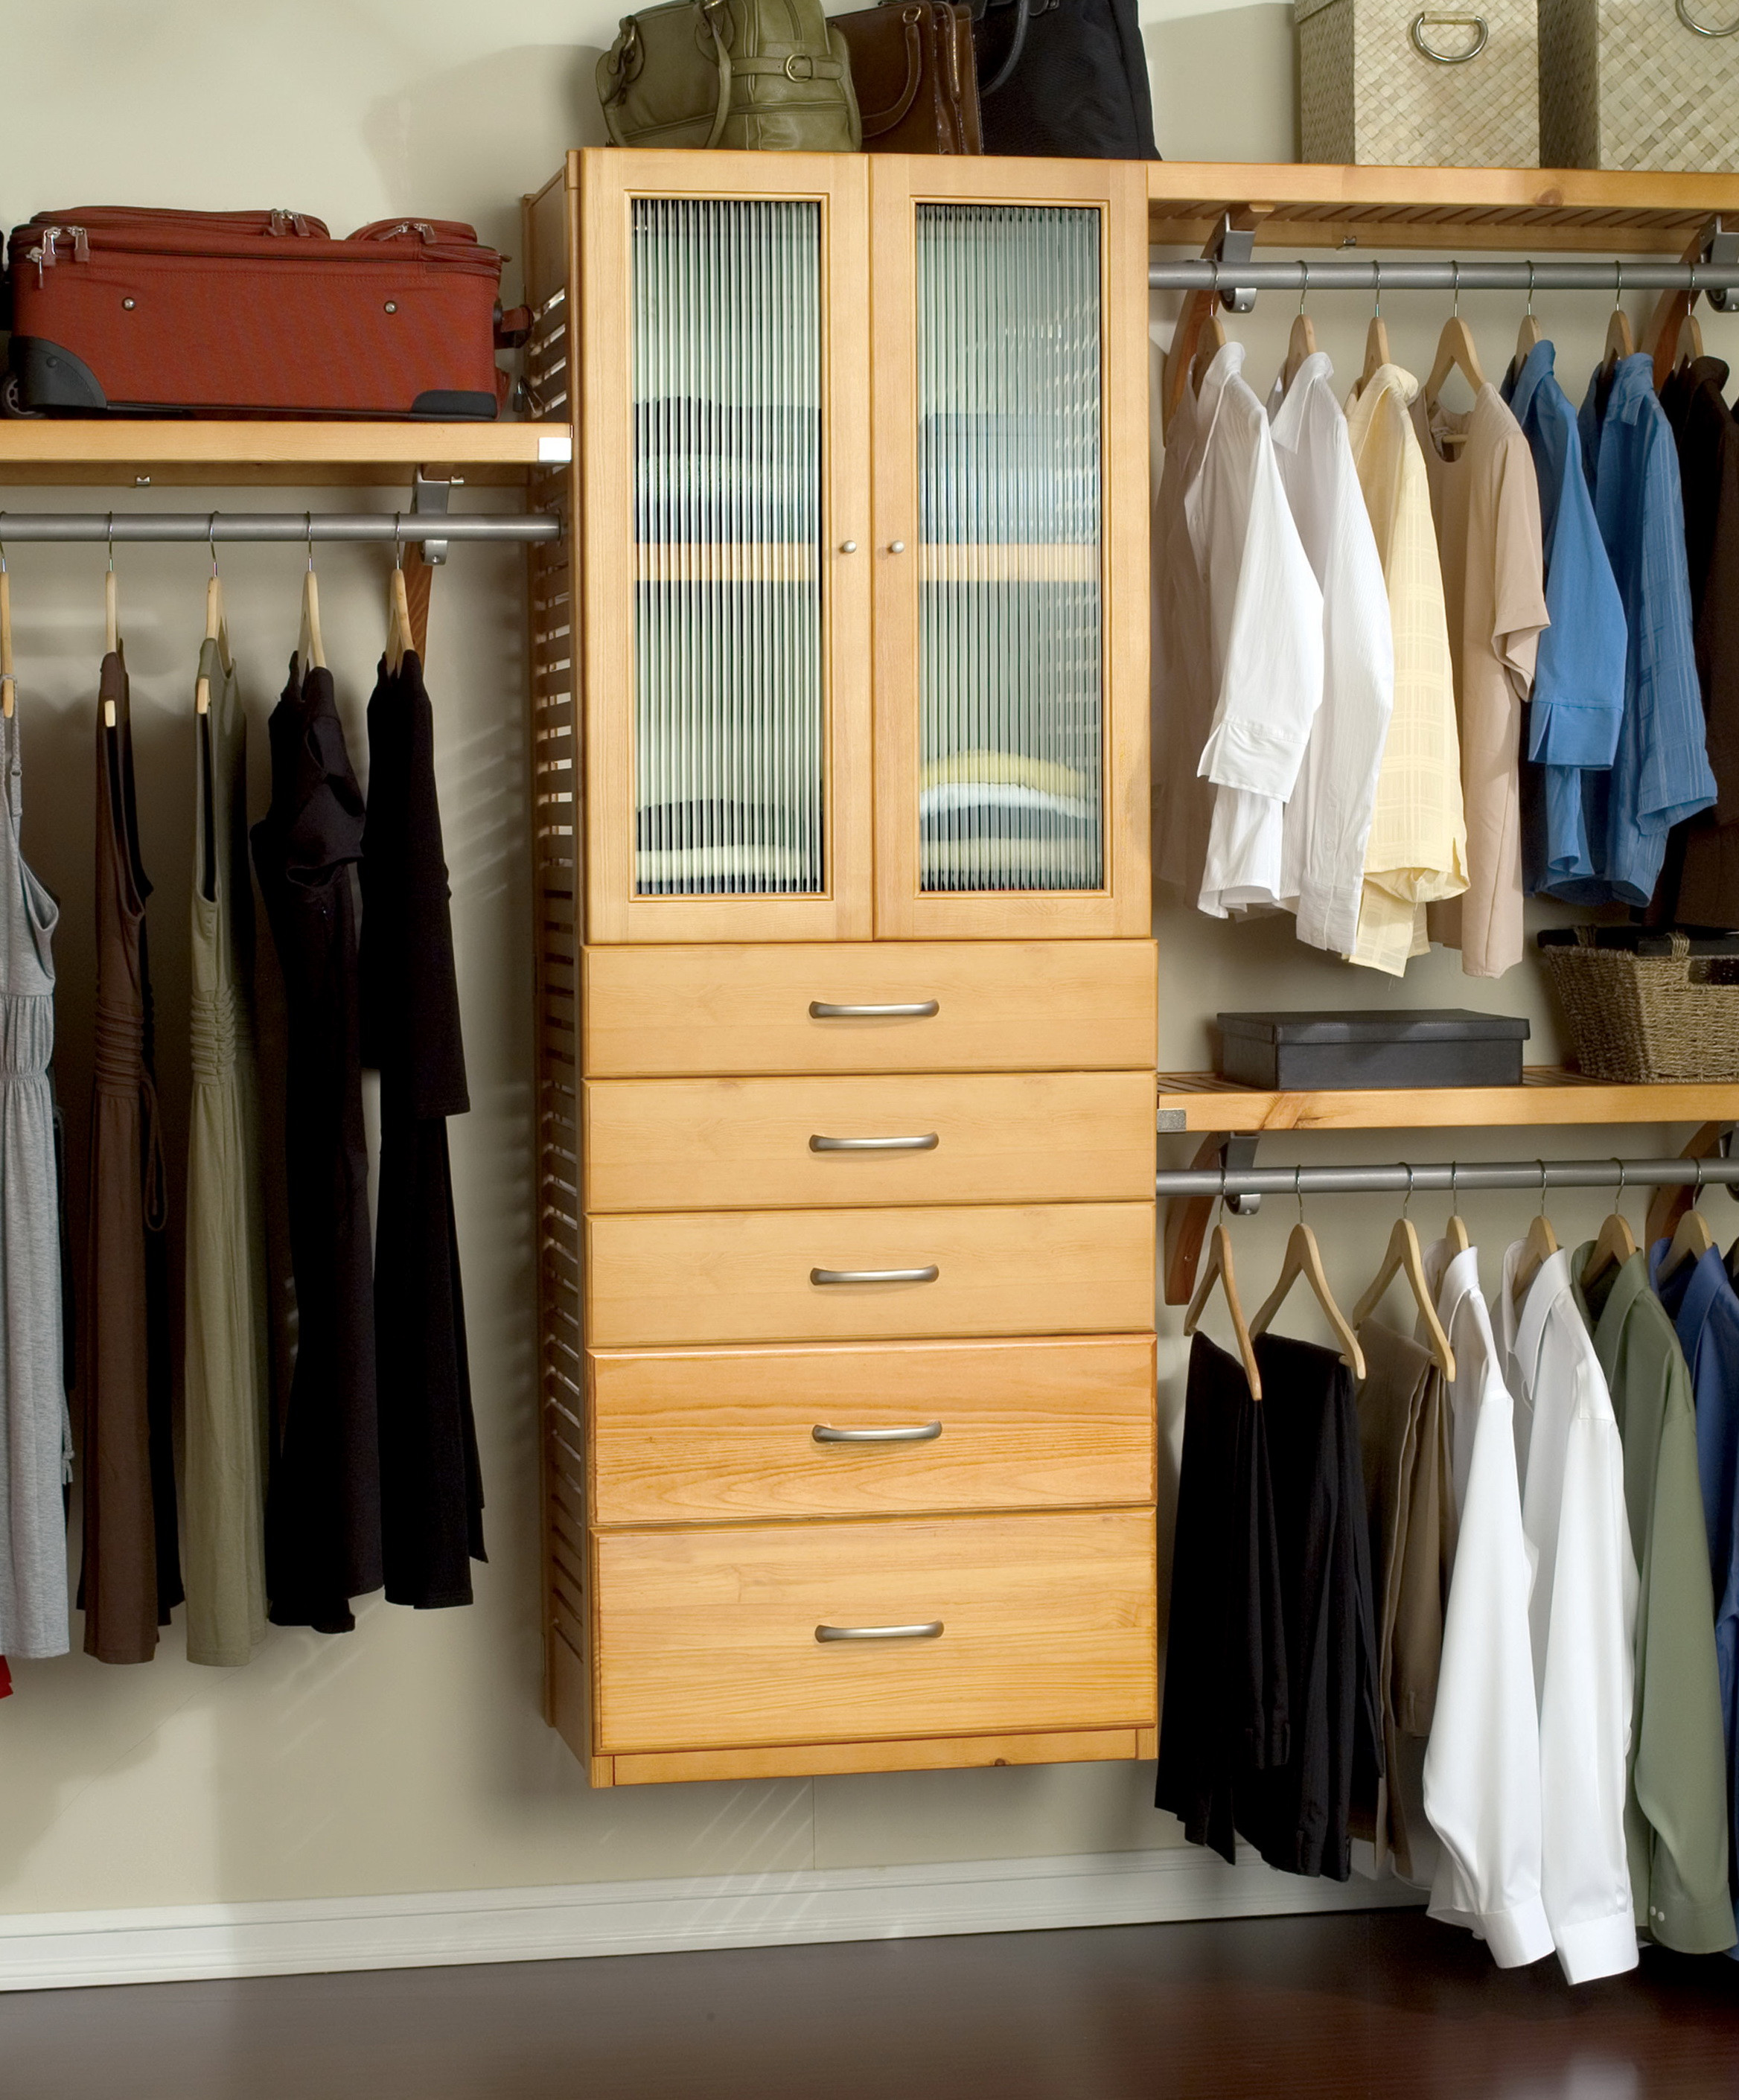 Best ideas about DIY Walk In Closet Organizers
. Save or Pin Diy Walk In Closet Organizers Now.